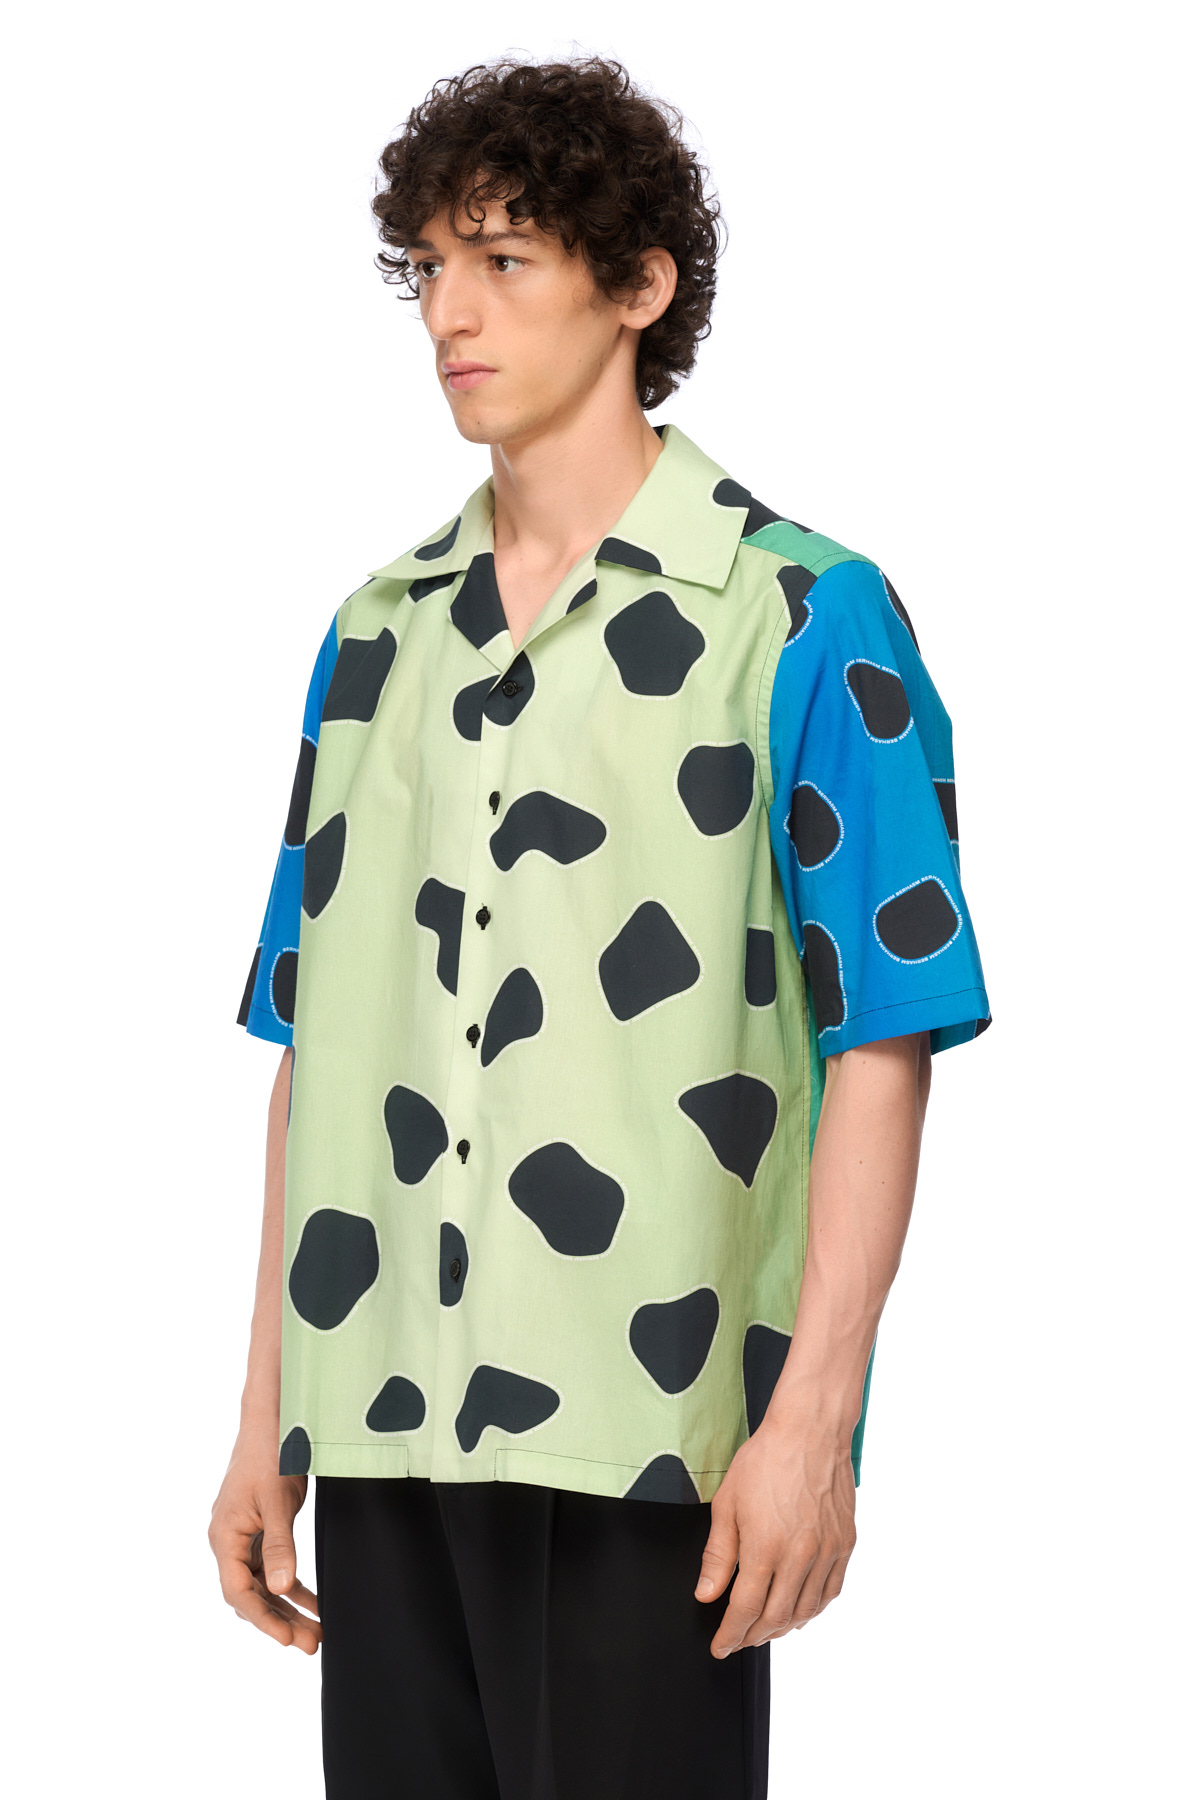 Leopard print shirt